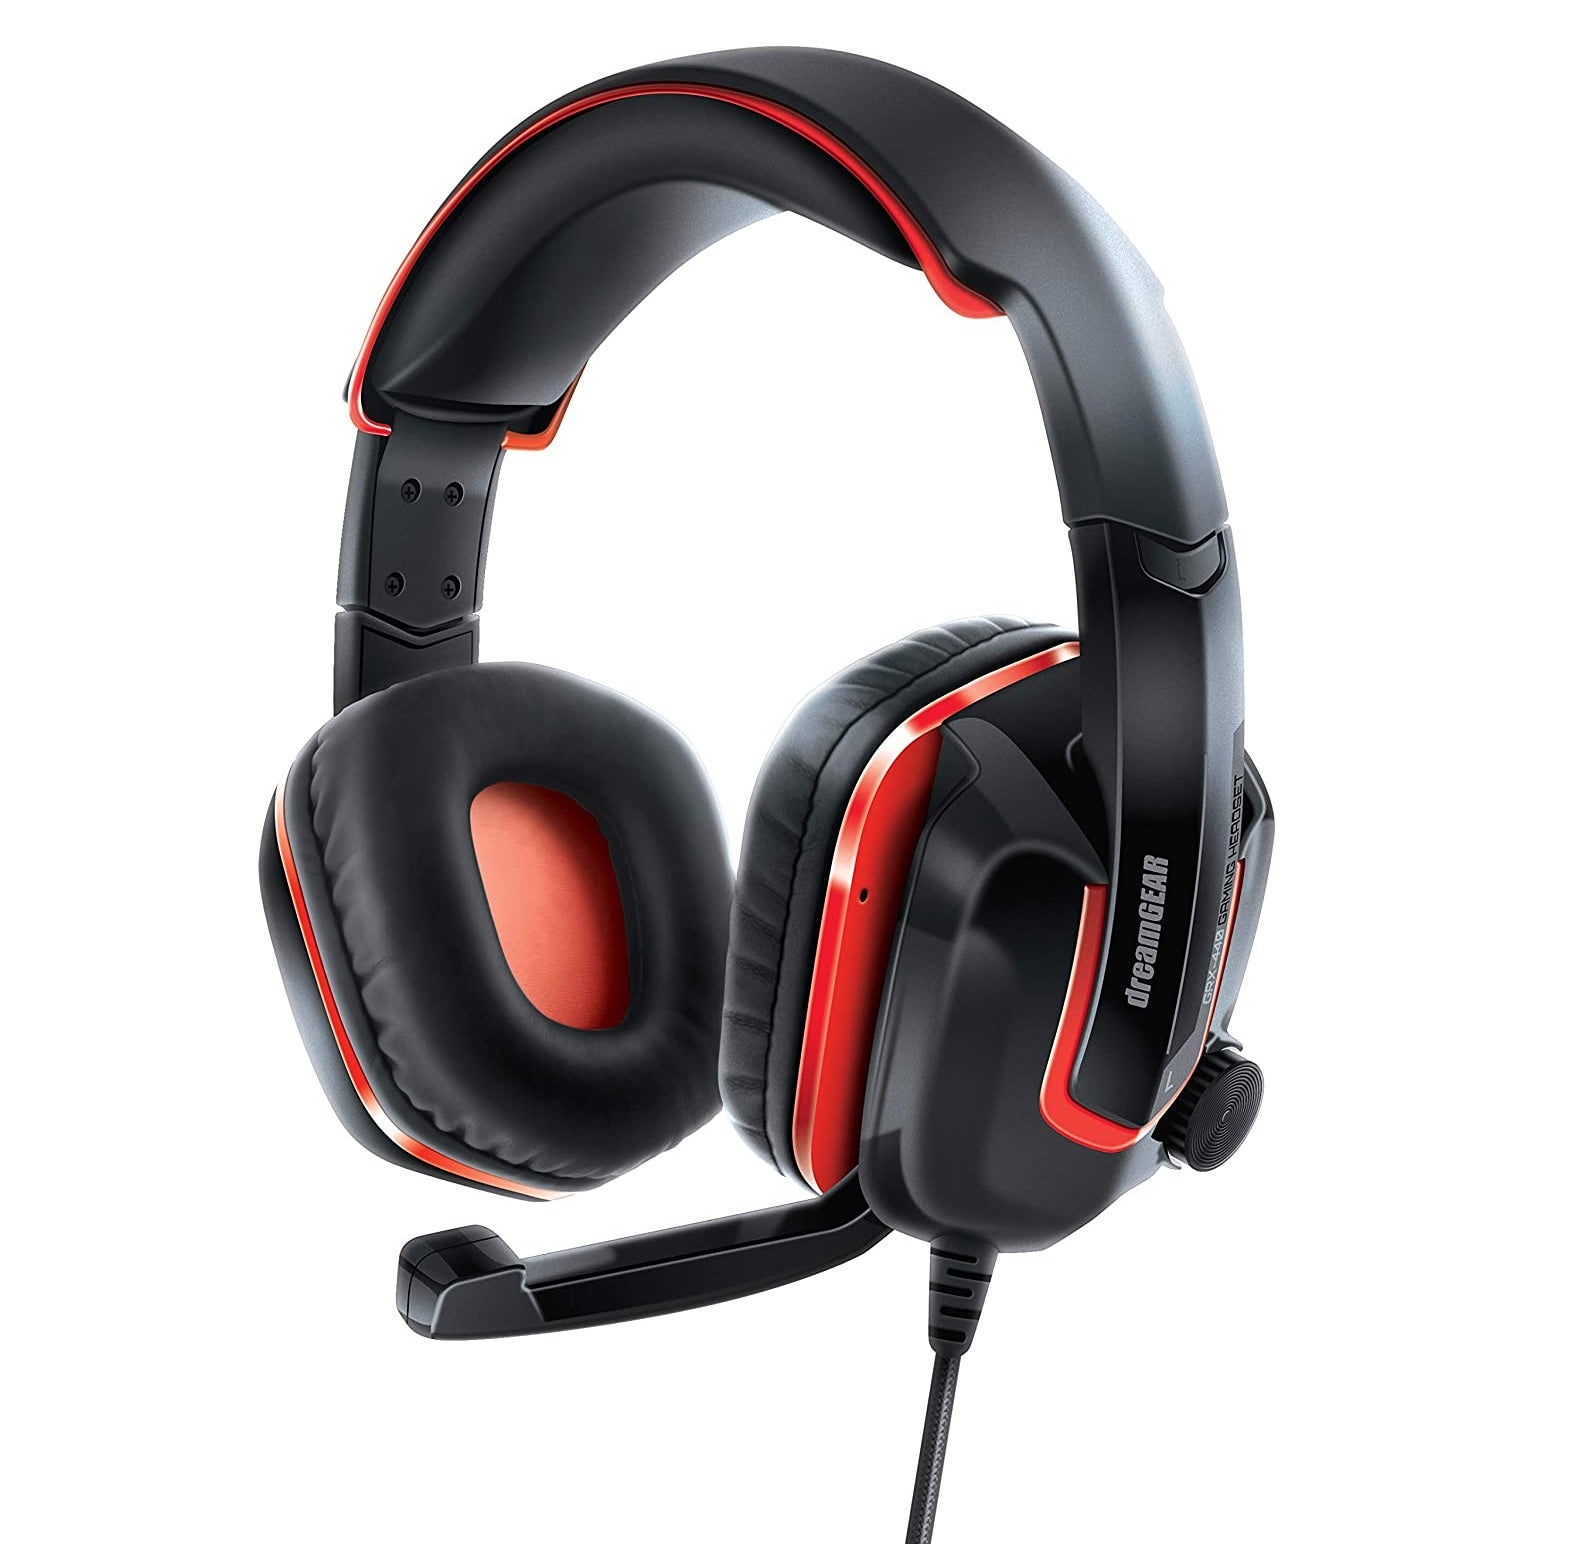 Dreamgear GRX-440 Gaming Headphones